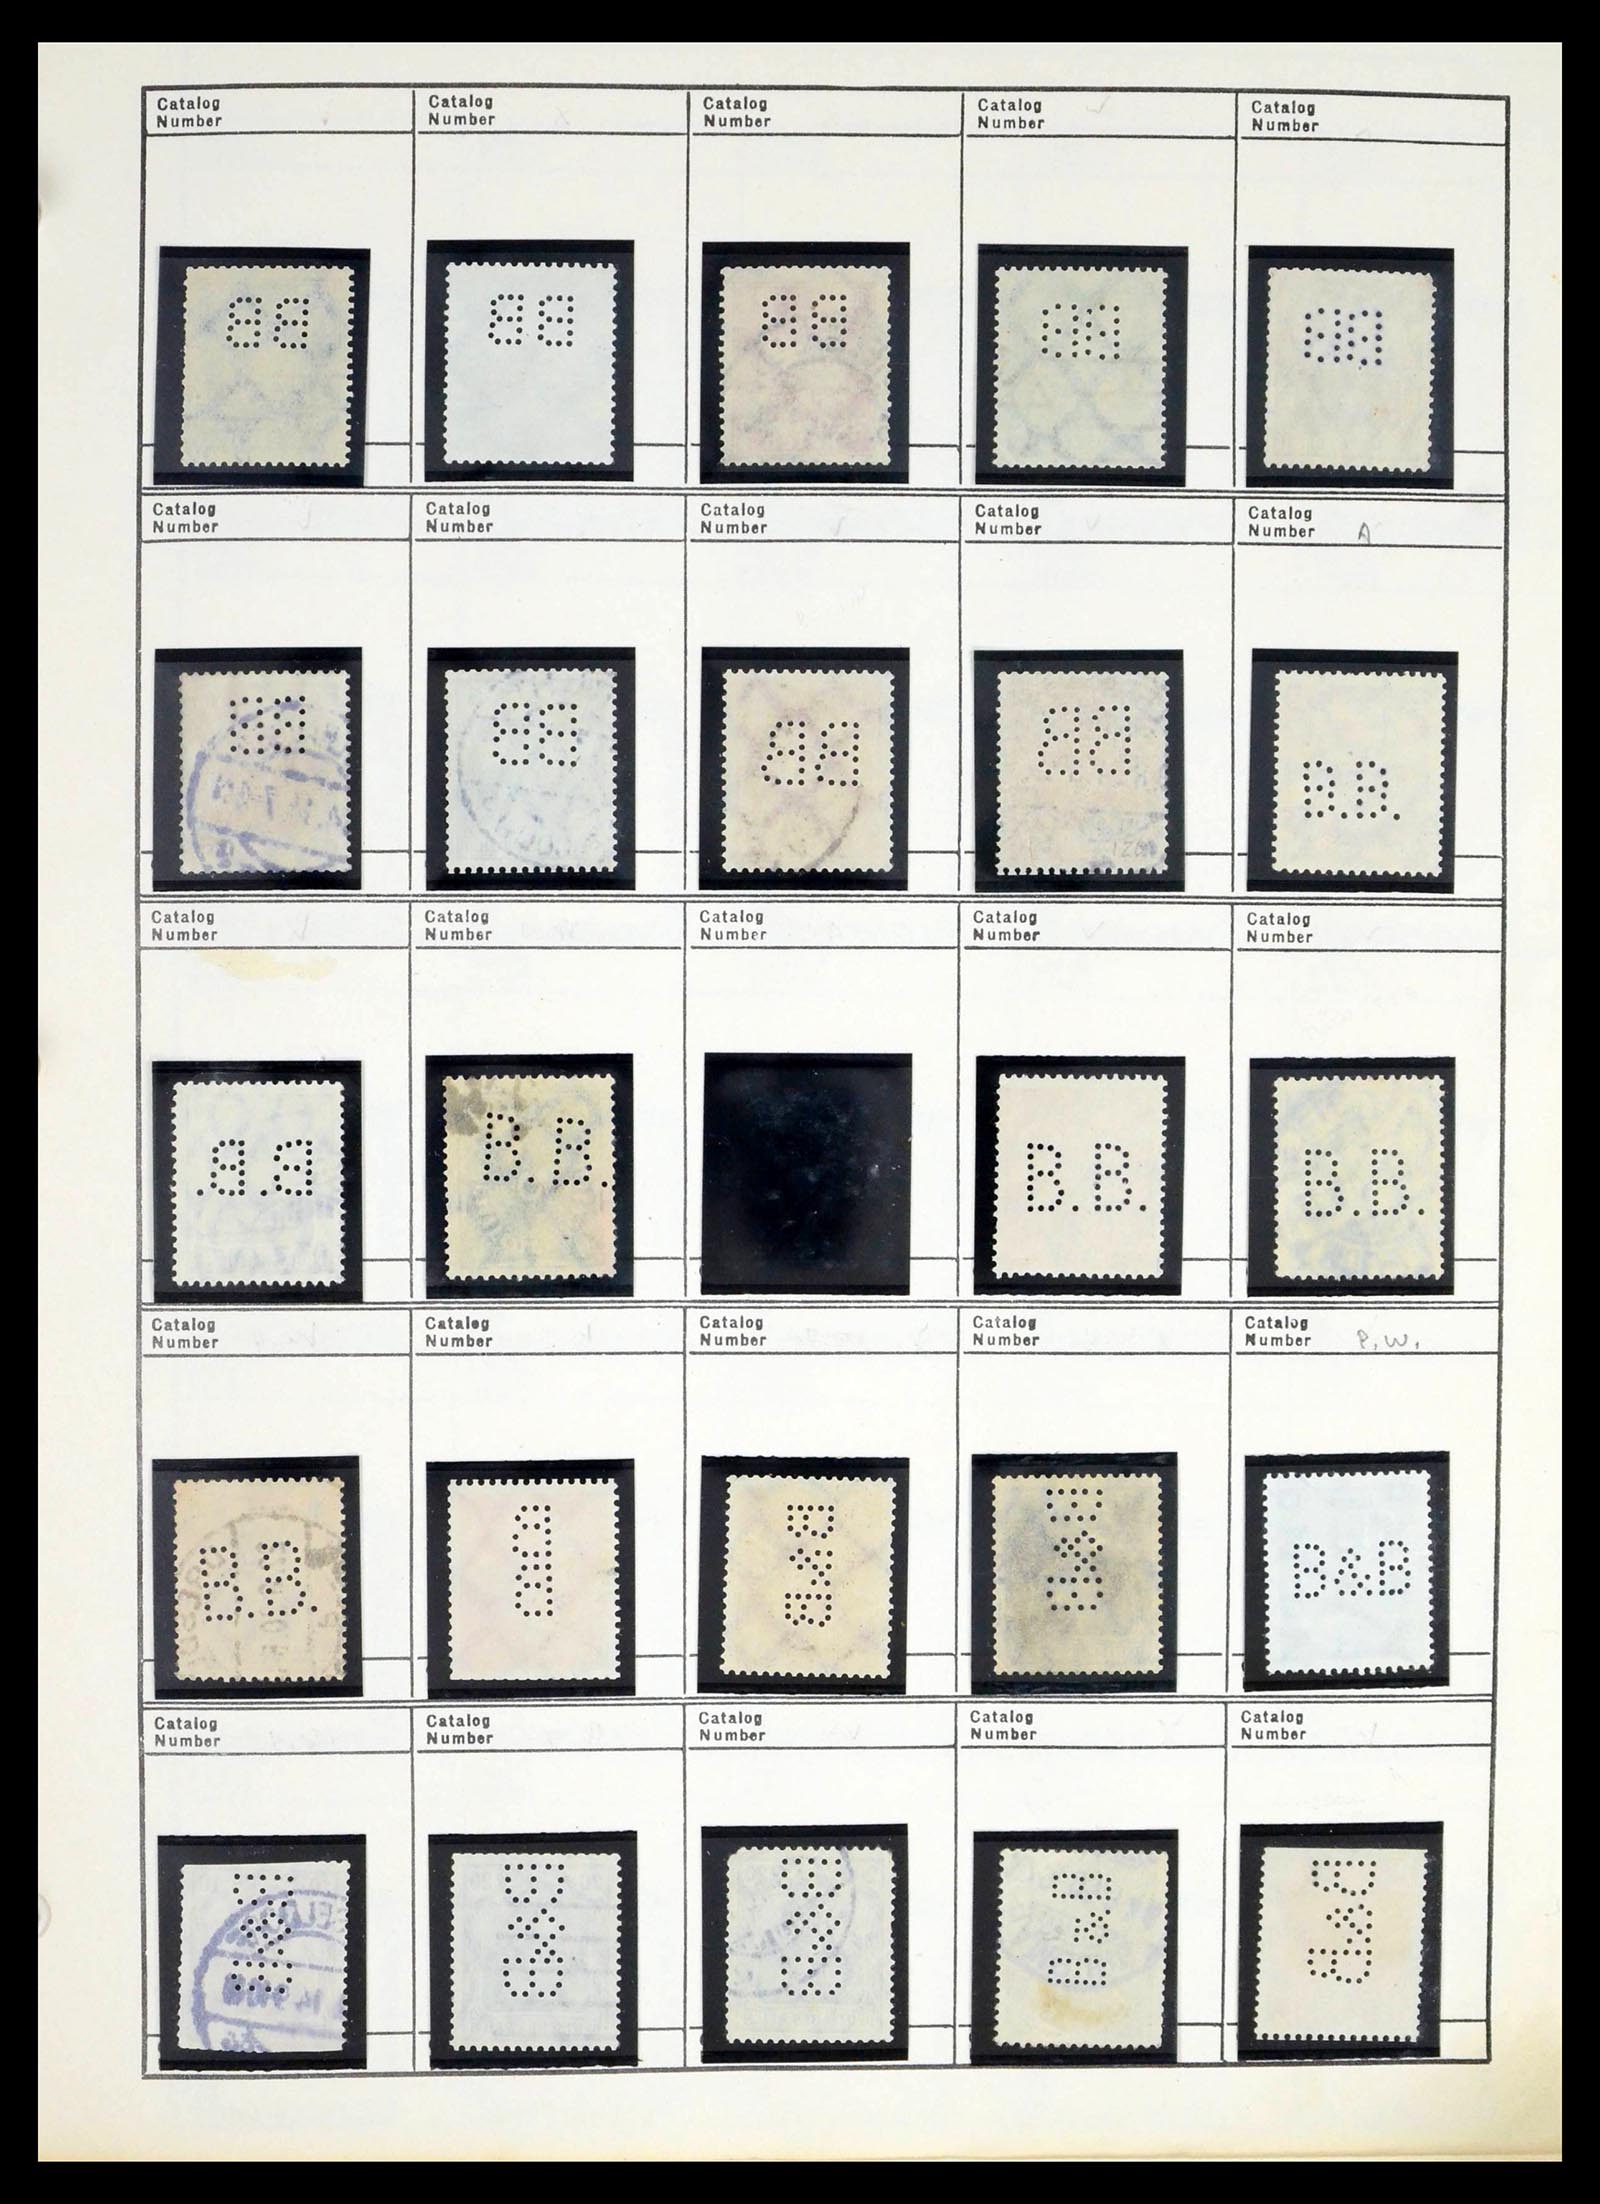 39480 0054 - Stamp collection 39480 German Reich perfins 1880-1955.